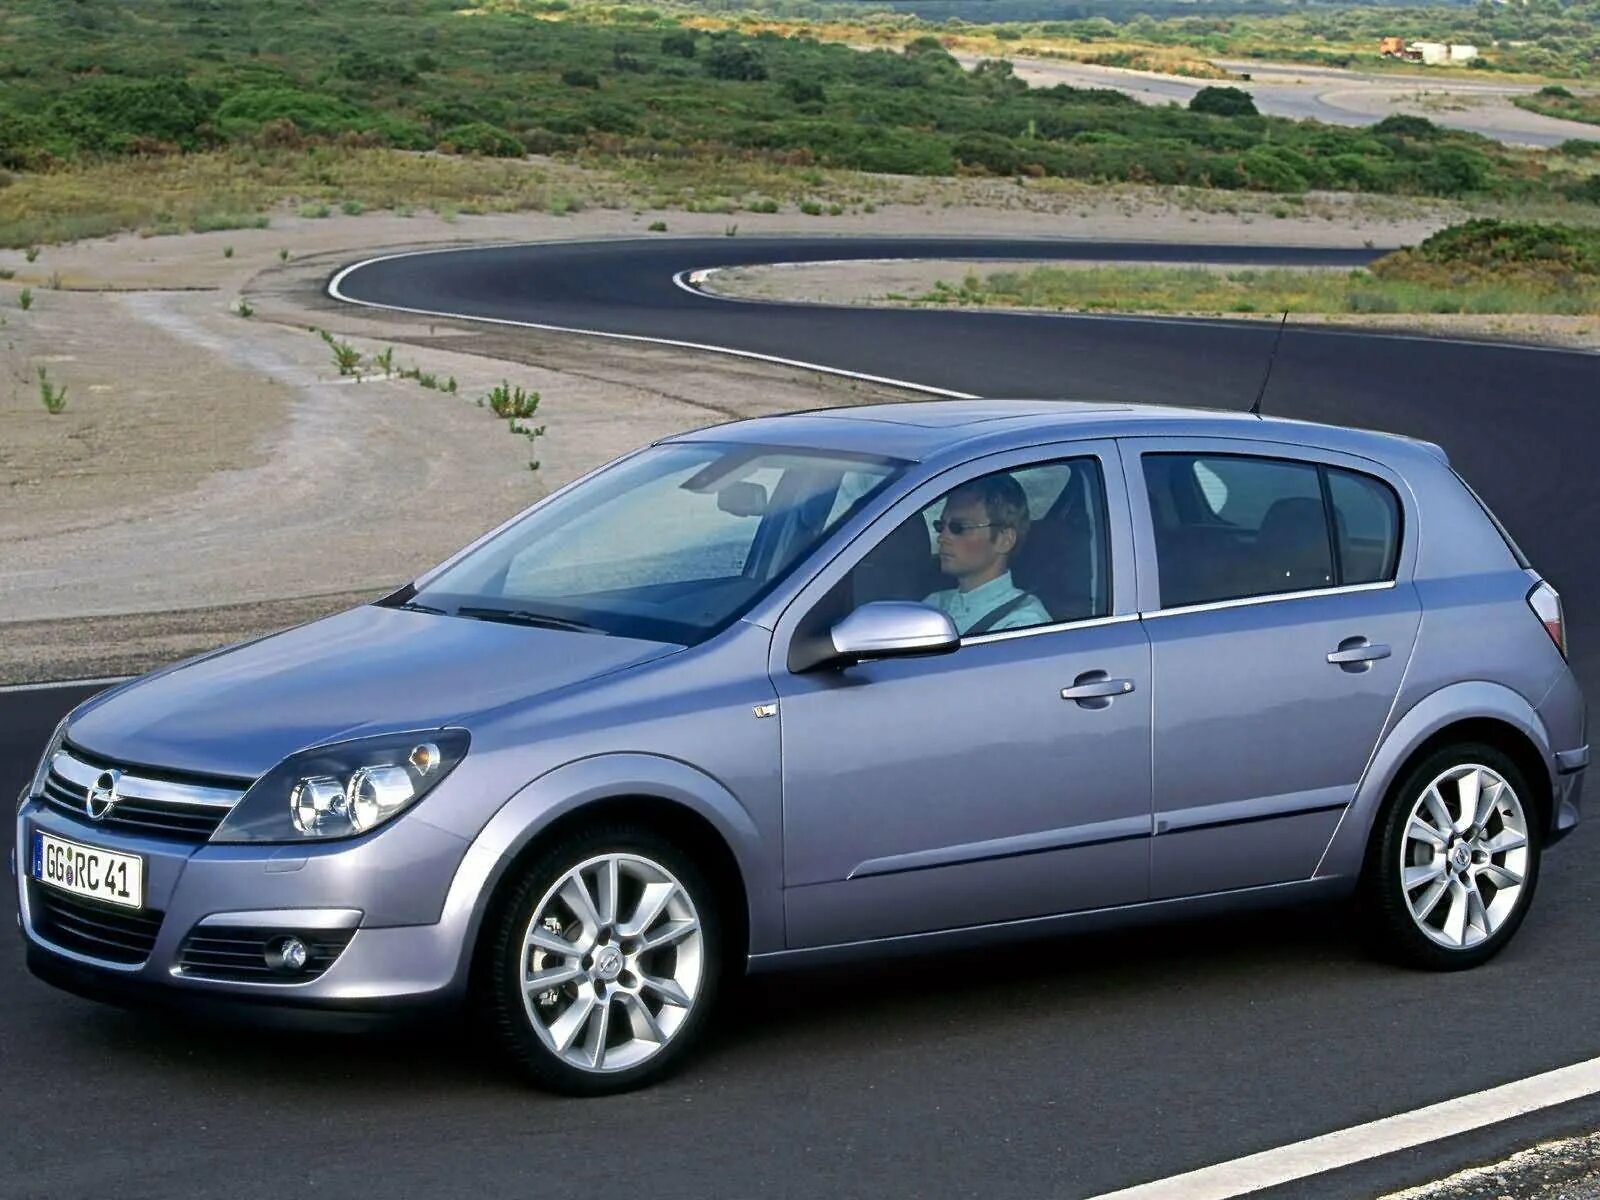 Opel Astra h 2004. Opel Astra 2004. Opel Astra 2004 хэтчбек.